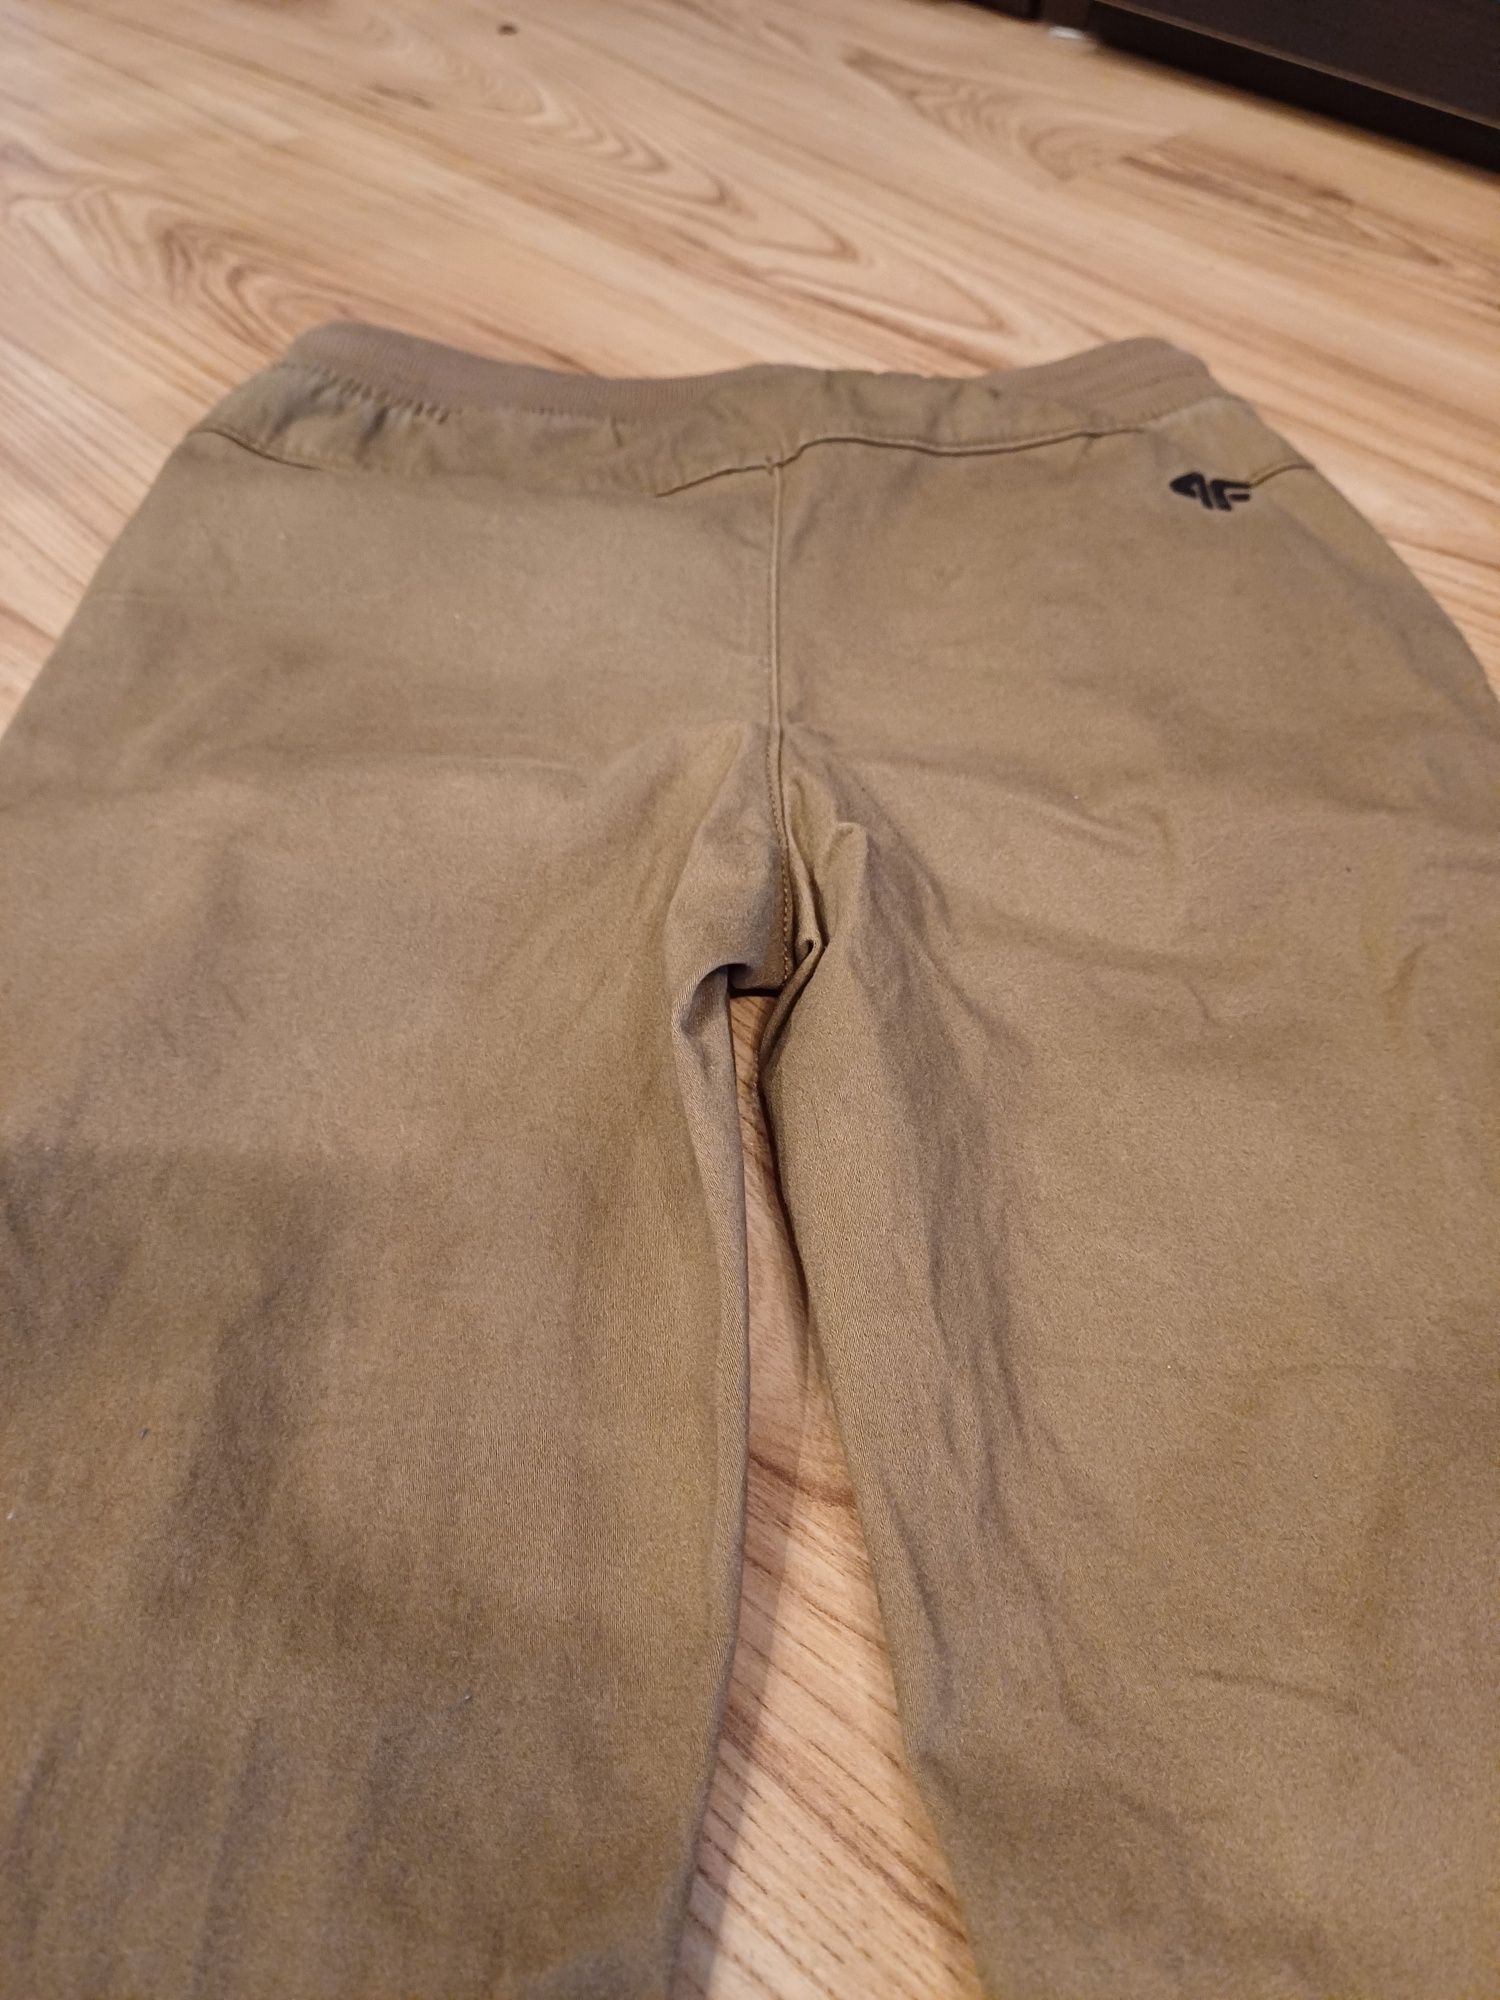 Spodnie materiałowe bawełna, joggery chłopięce 4F, rozmiar 146